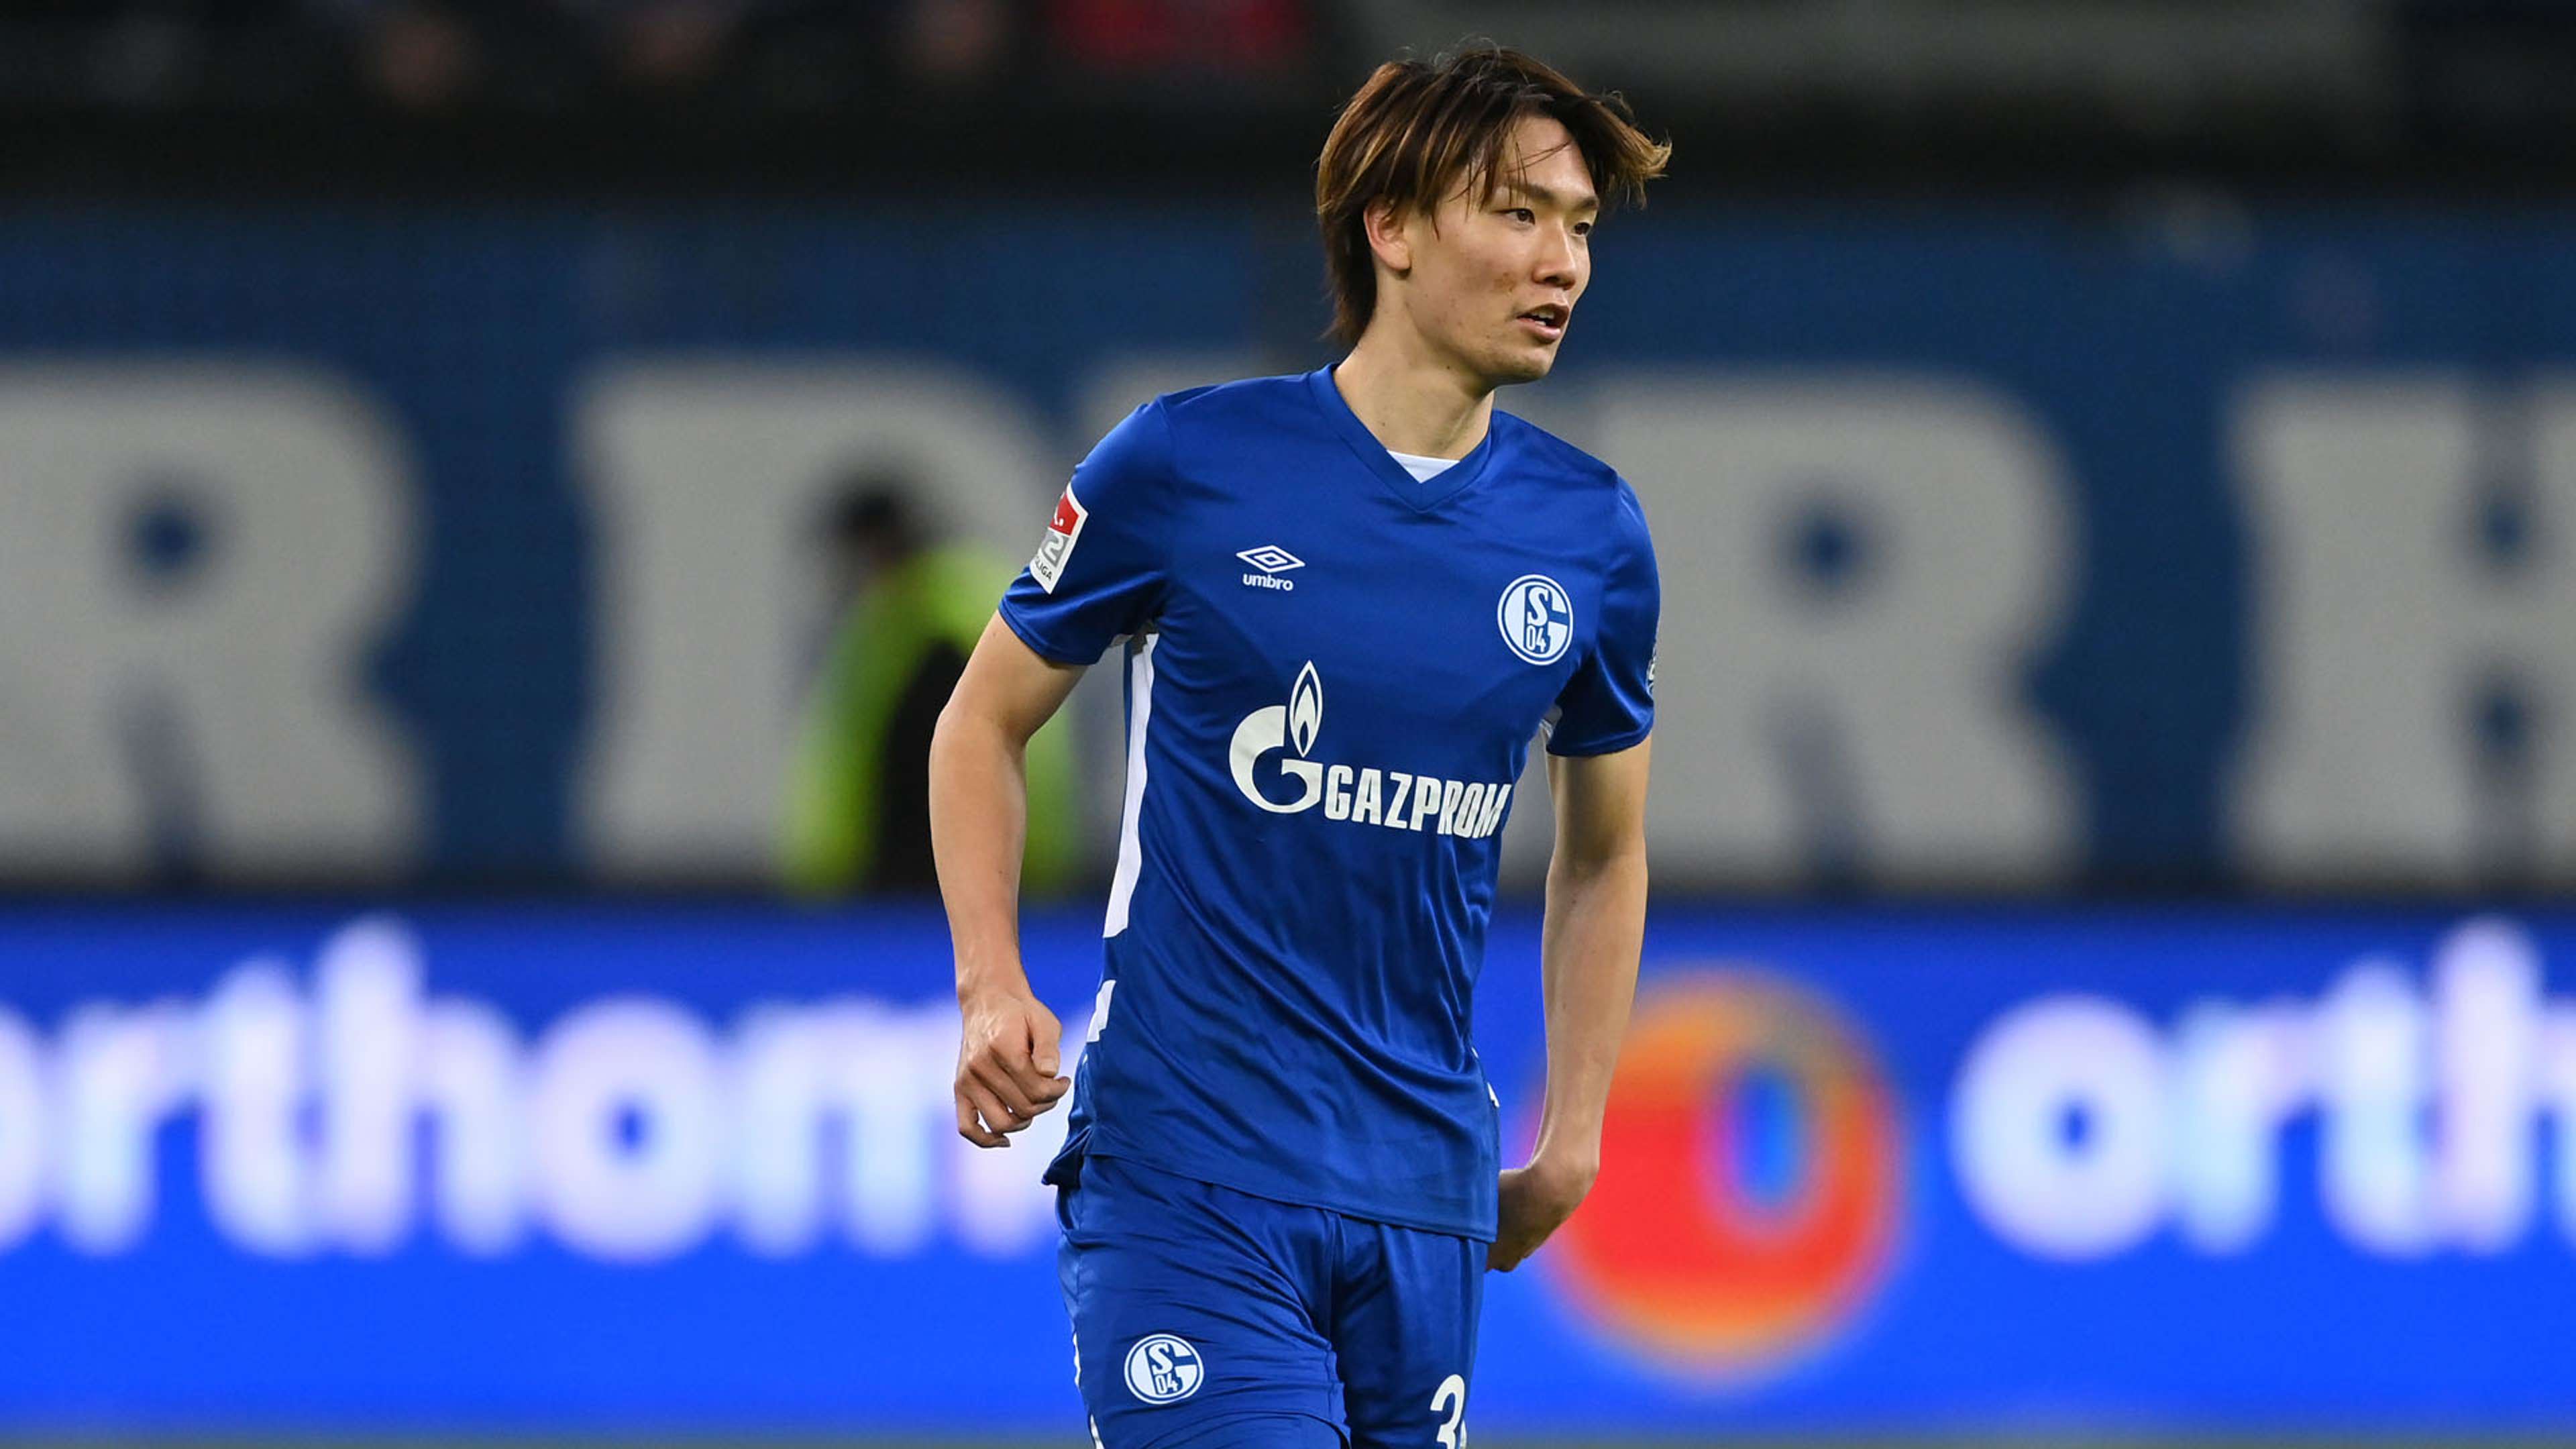 Kou Itakura of Schalke 